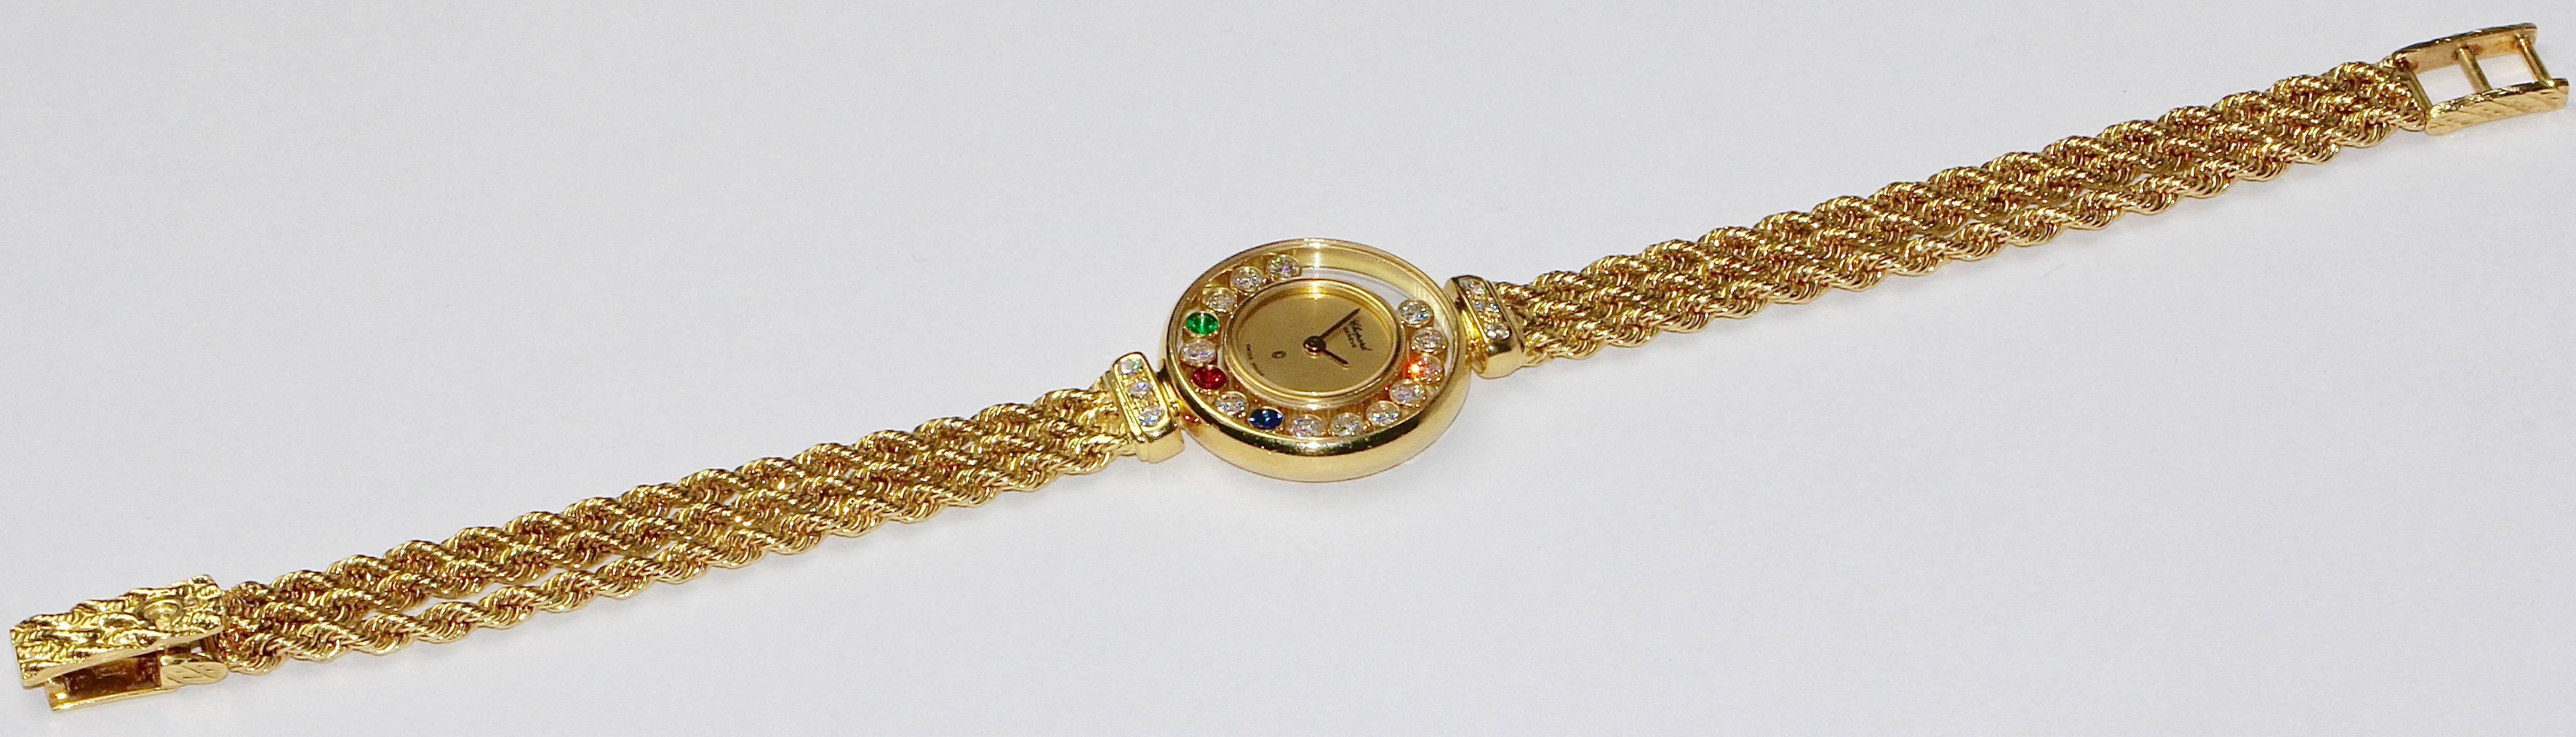 chopard ruby watch